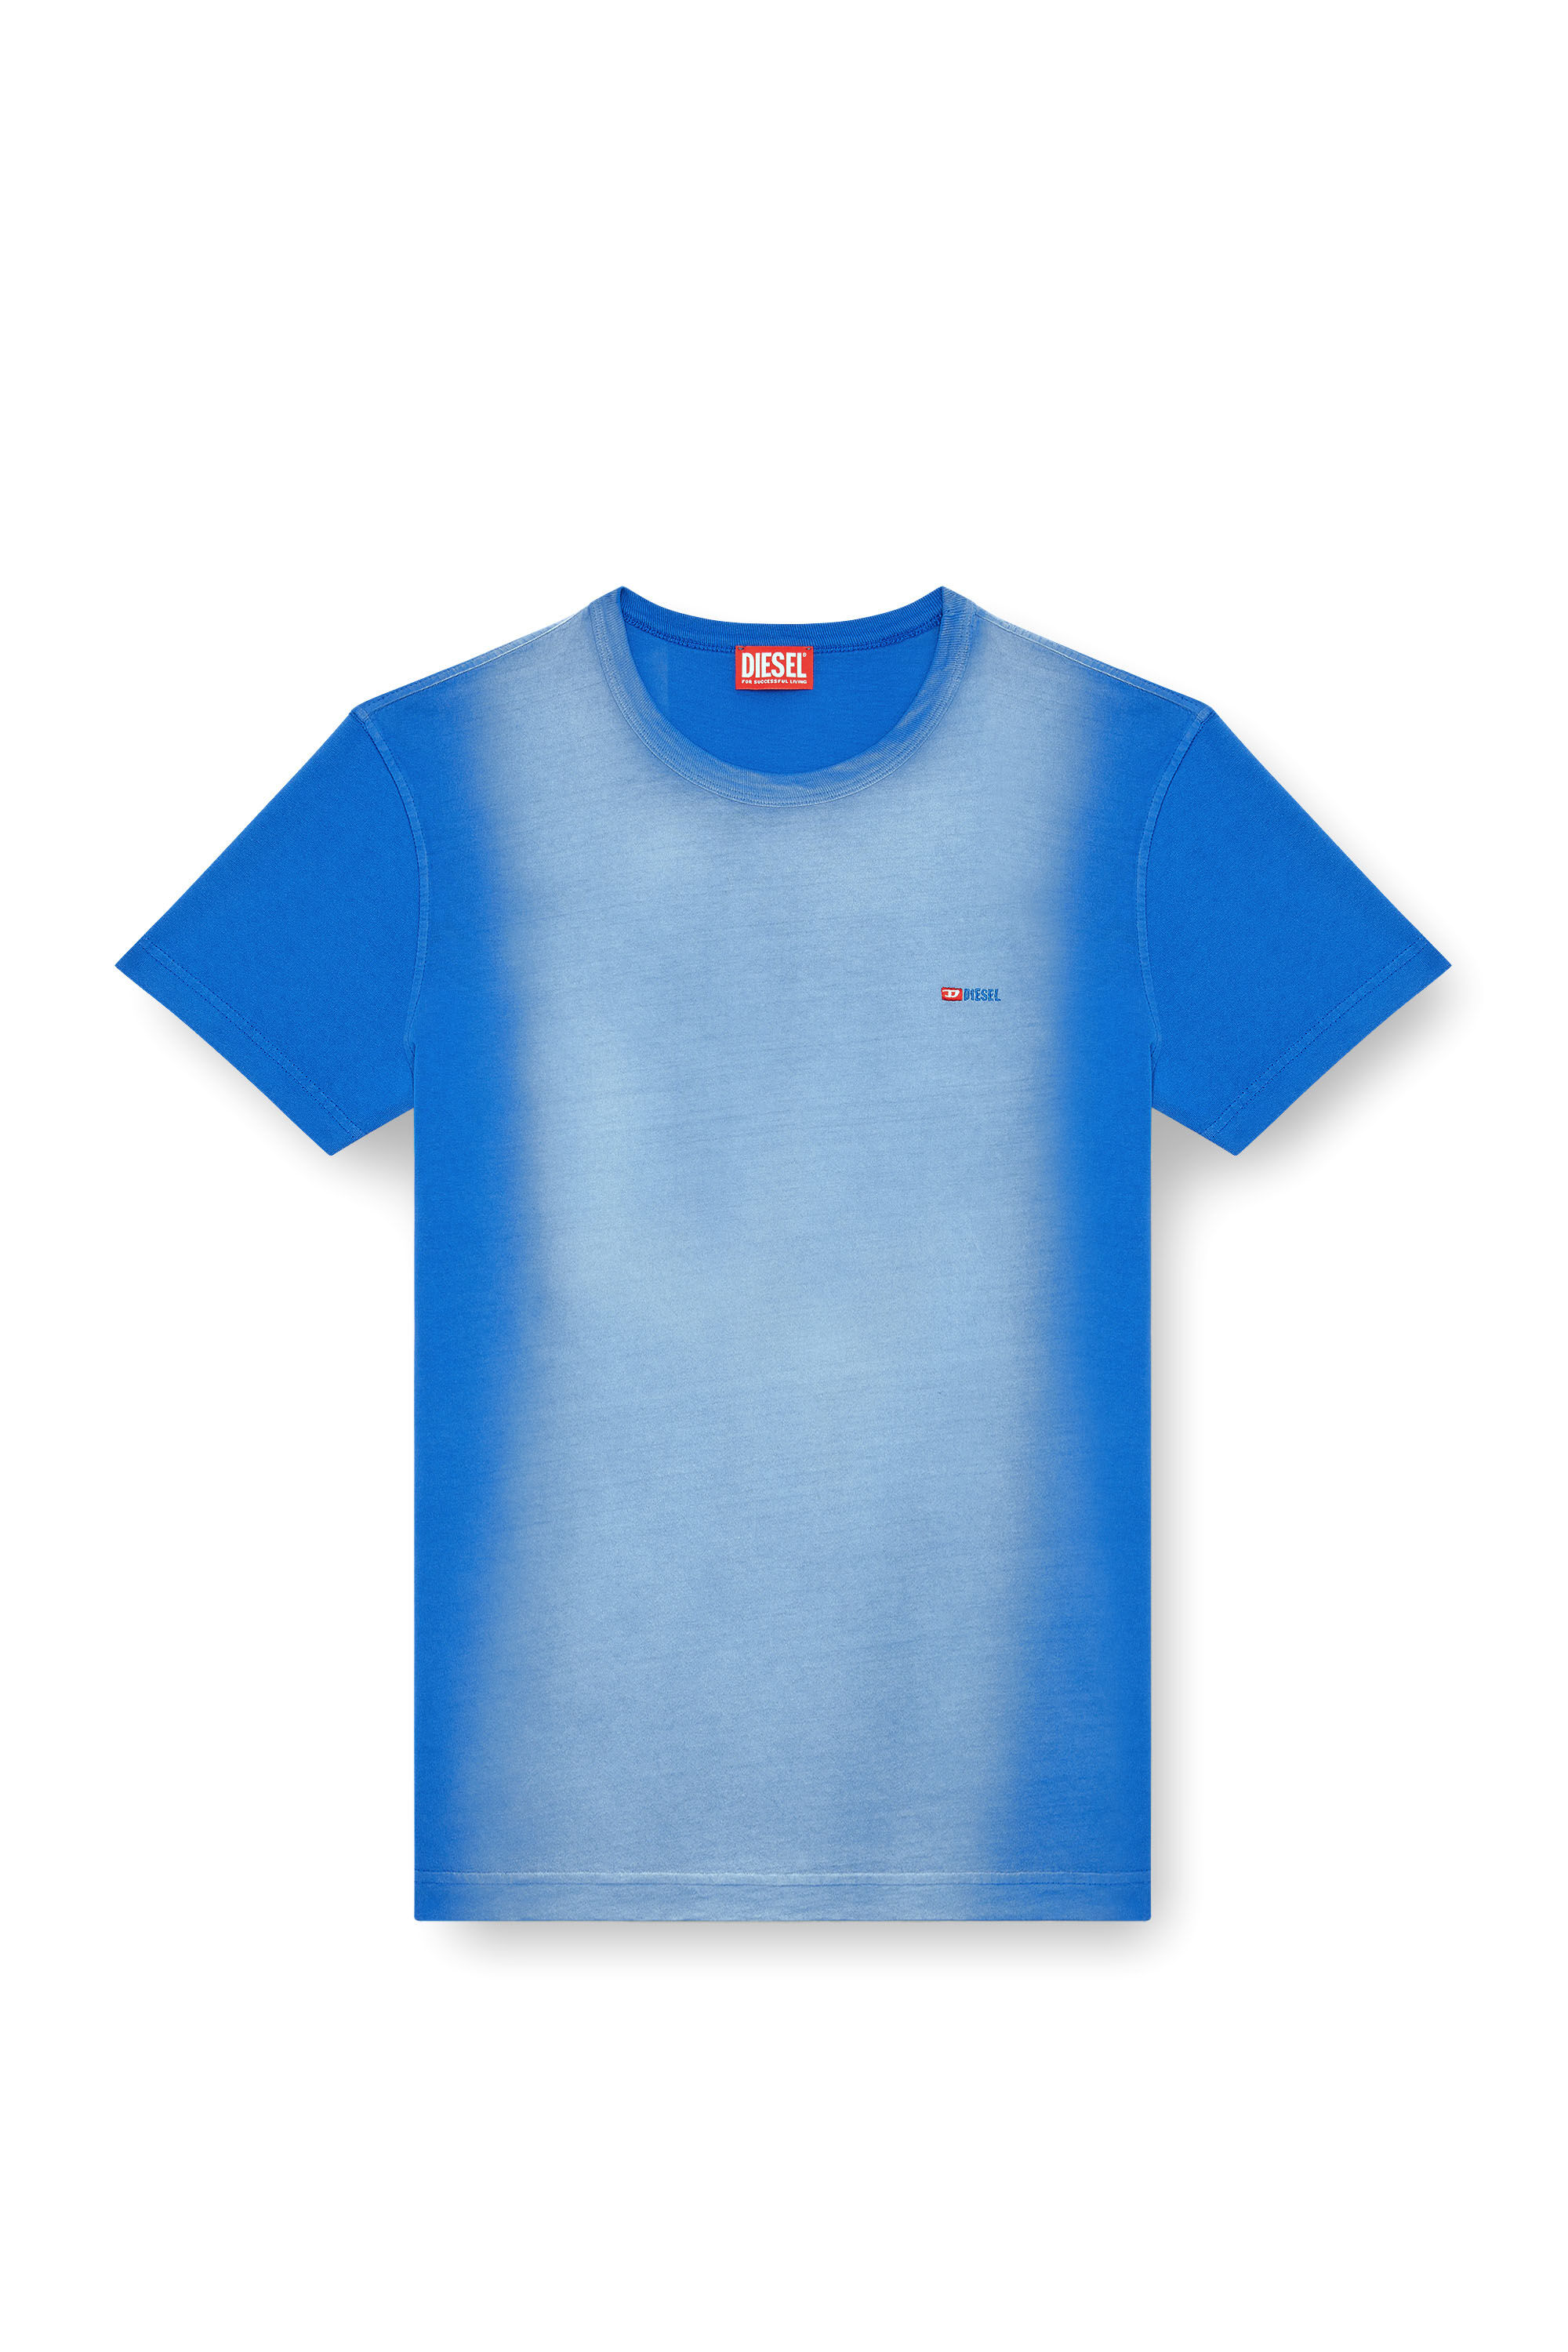 Diesel - T-ADJUST-Q2, Hombre Camiseta en tejido de algodón rociado in Azul marino - Image 2